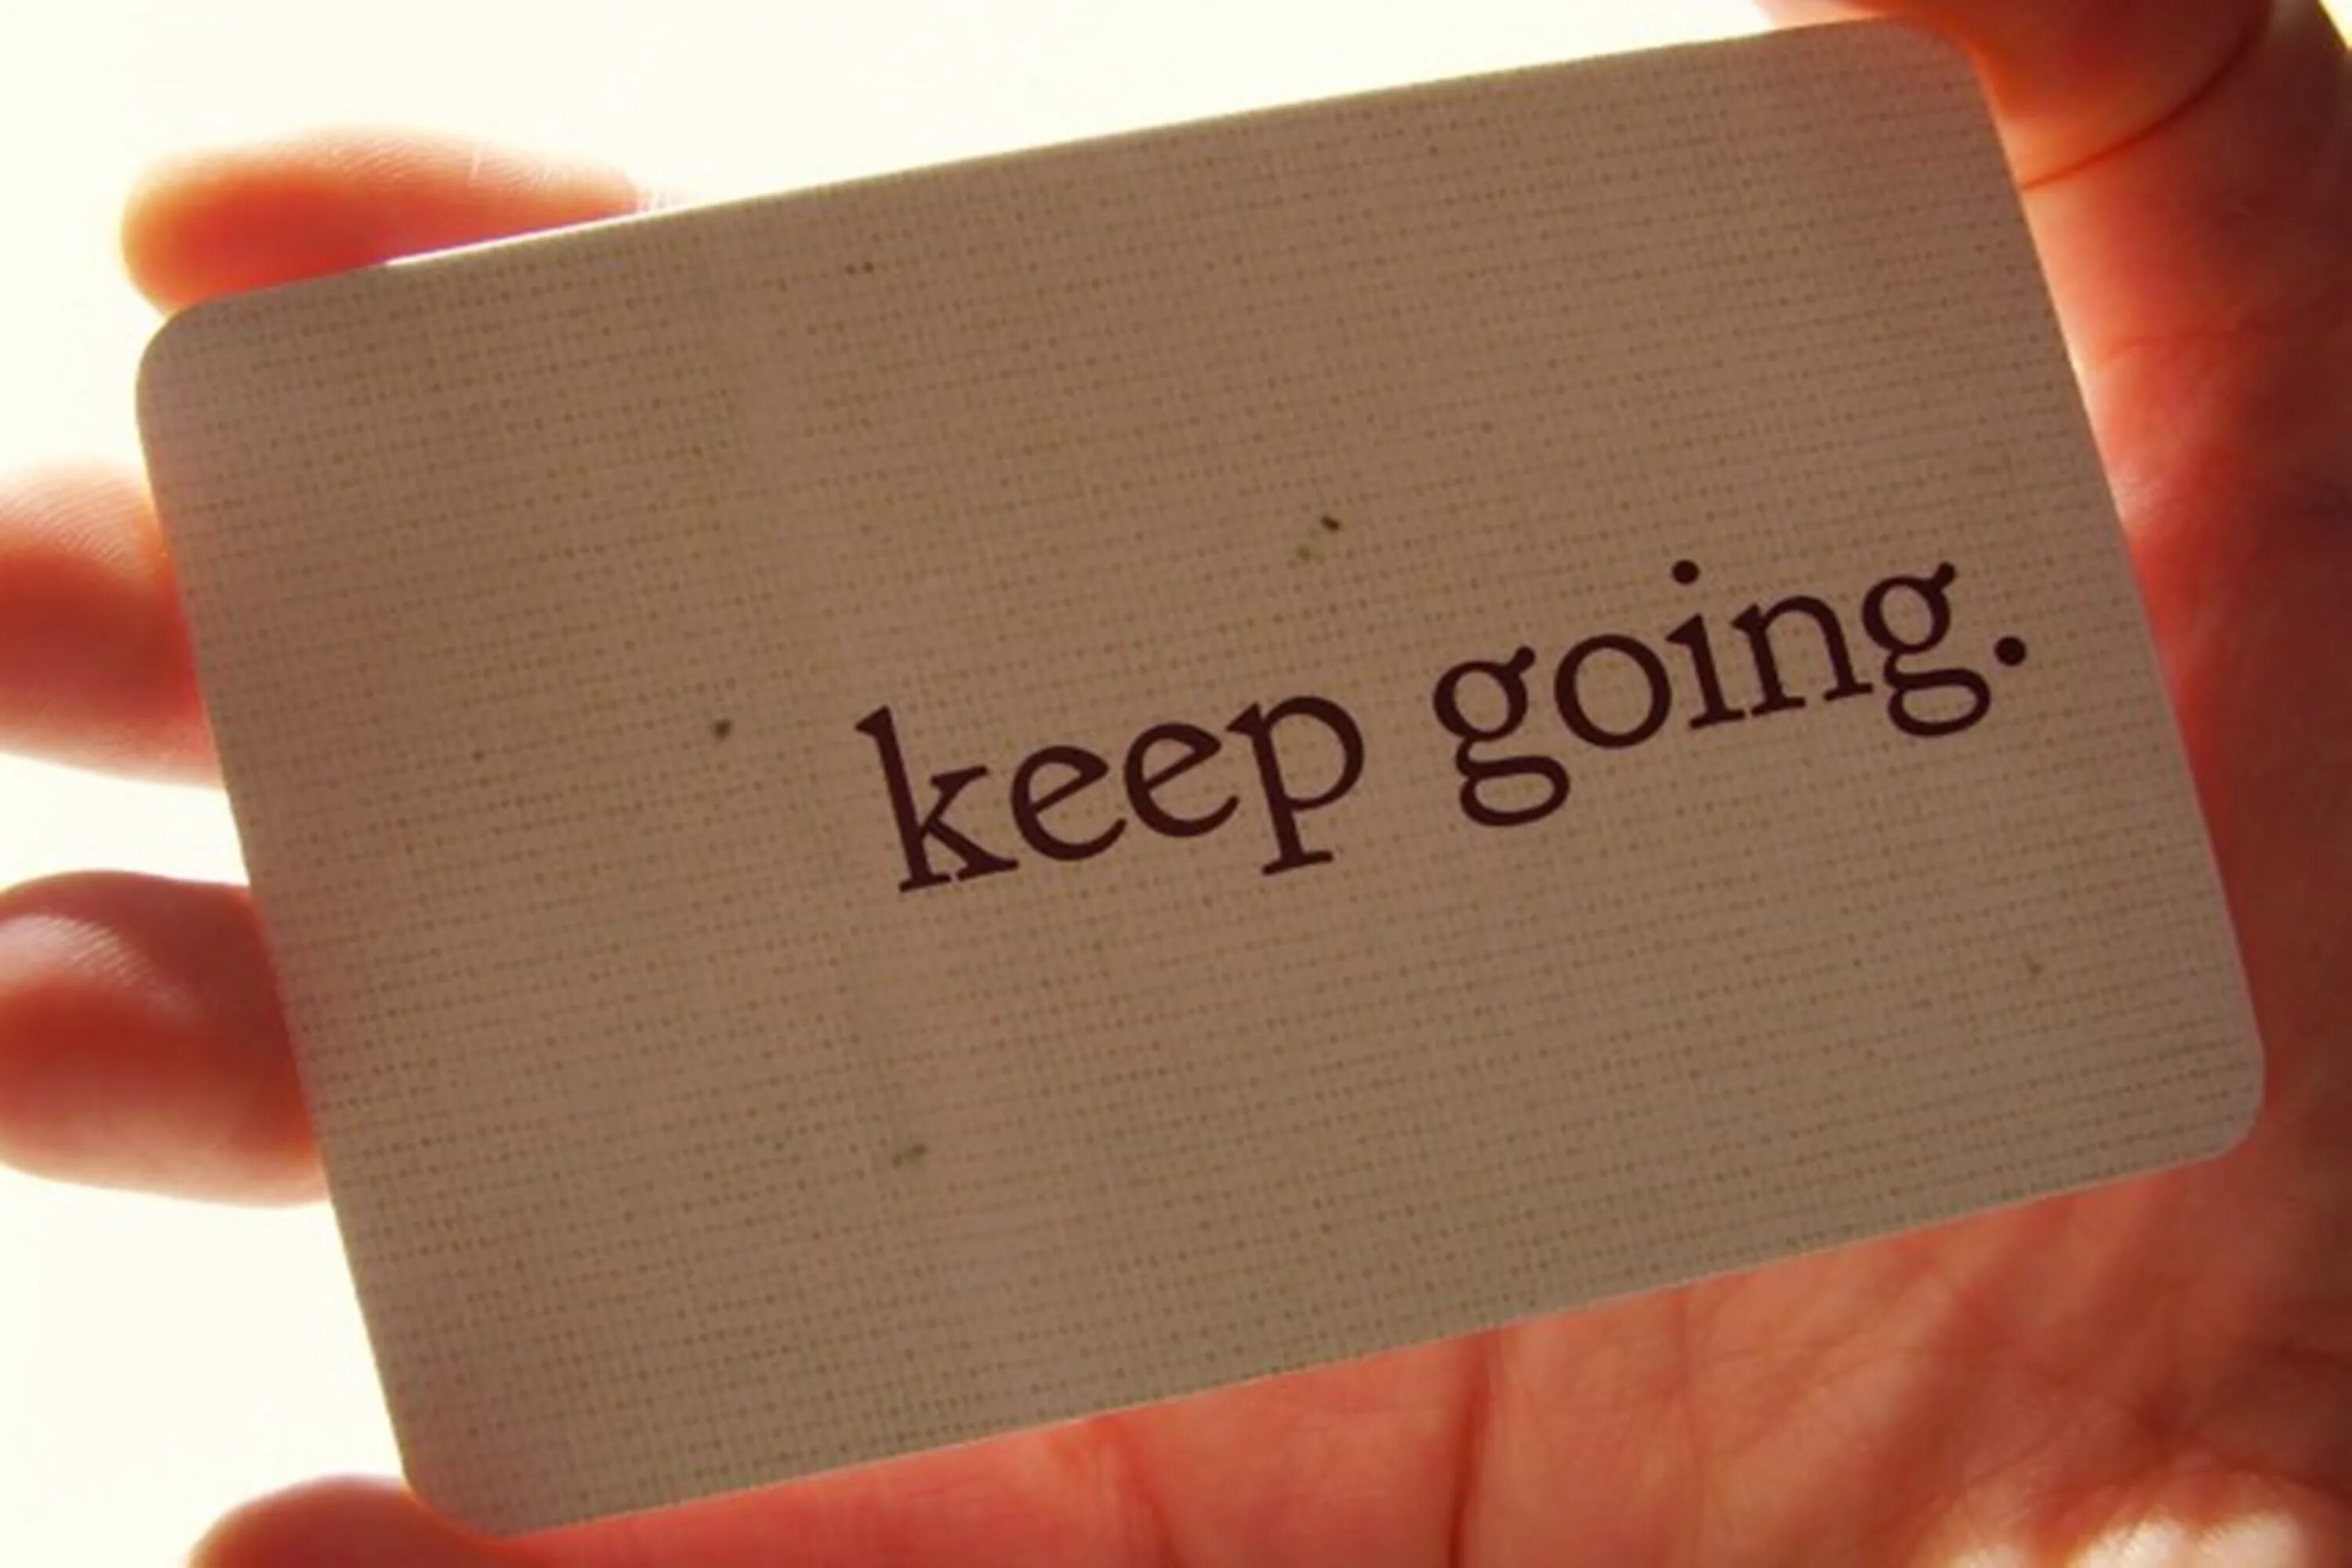 Go on doing keep on doing. Keep going. Keep going quotes. Keep going keep growing. Keep on going надпись.